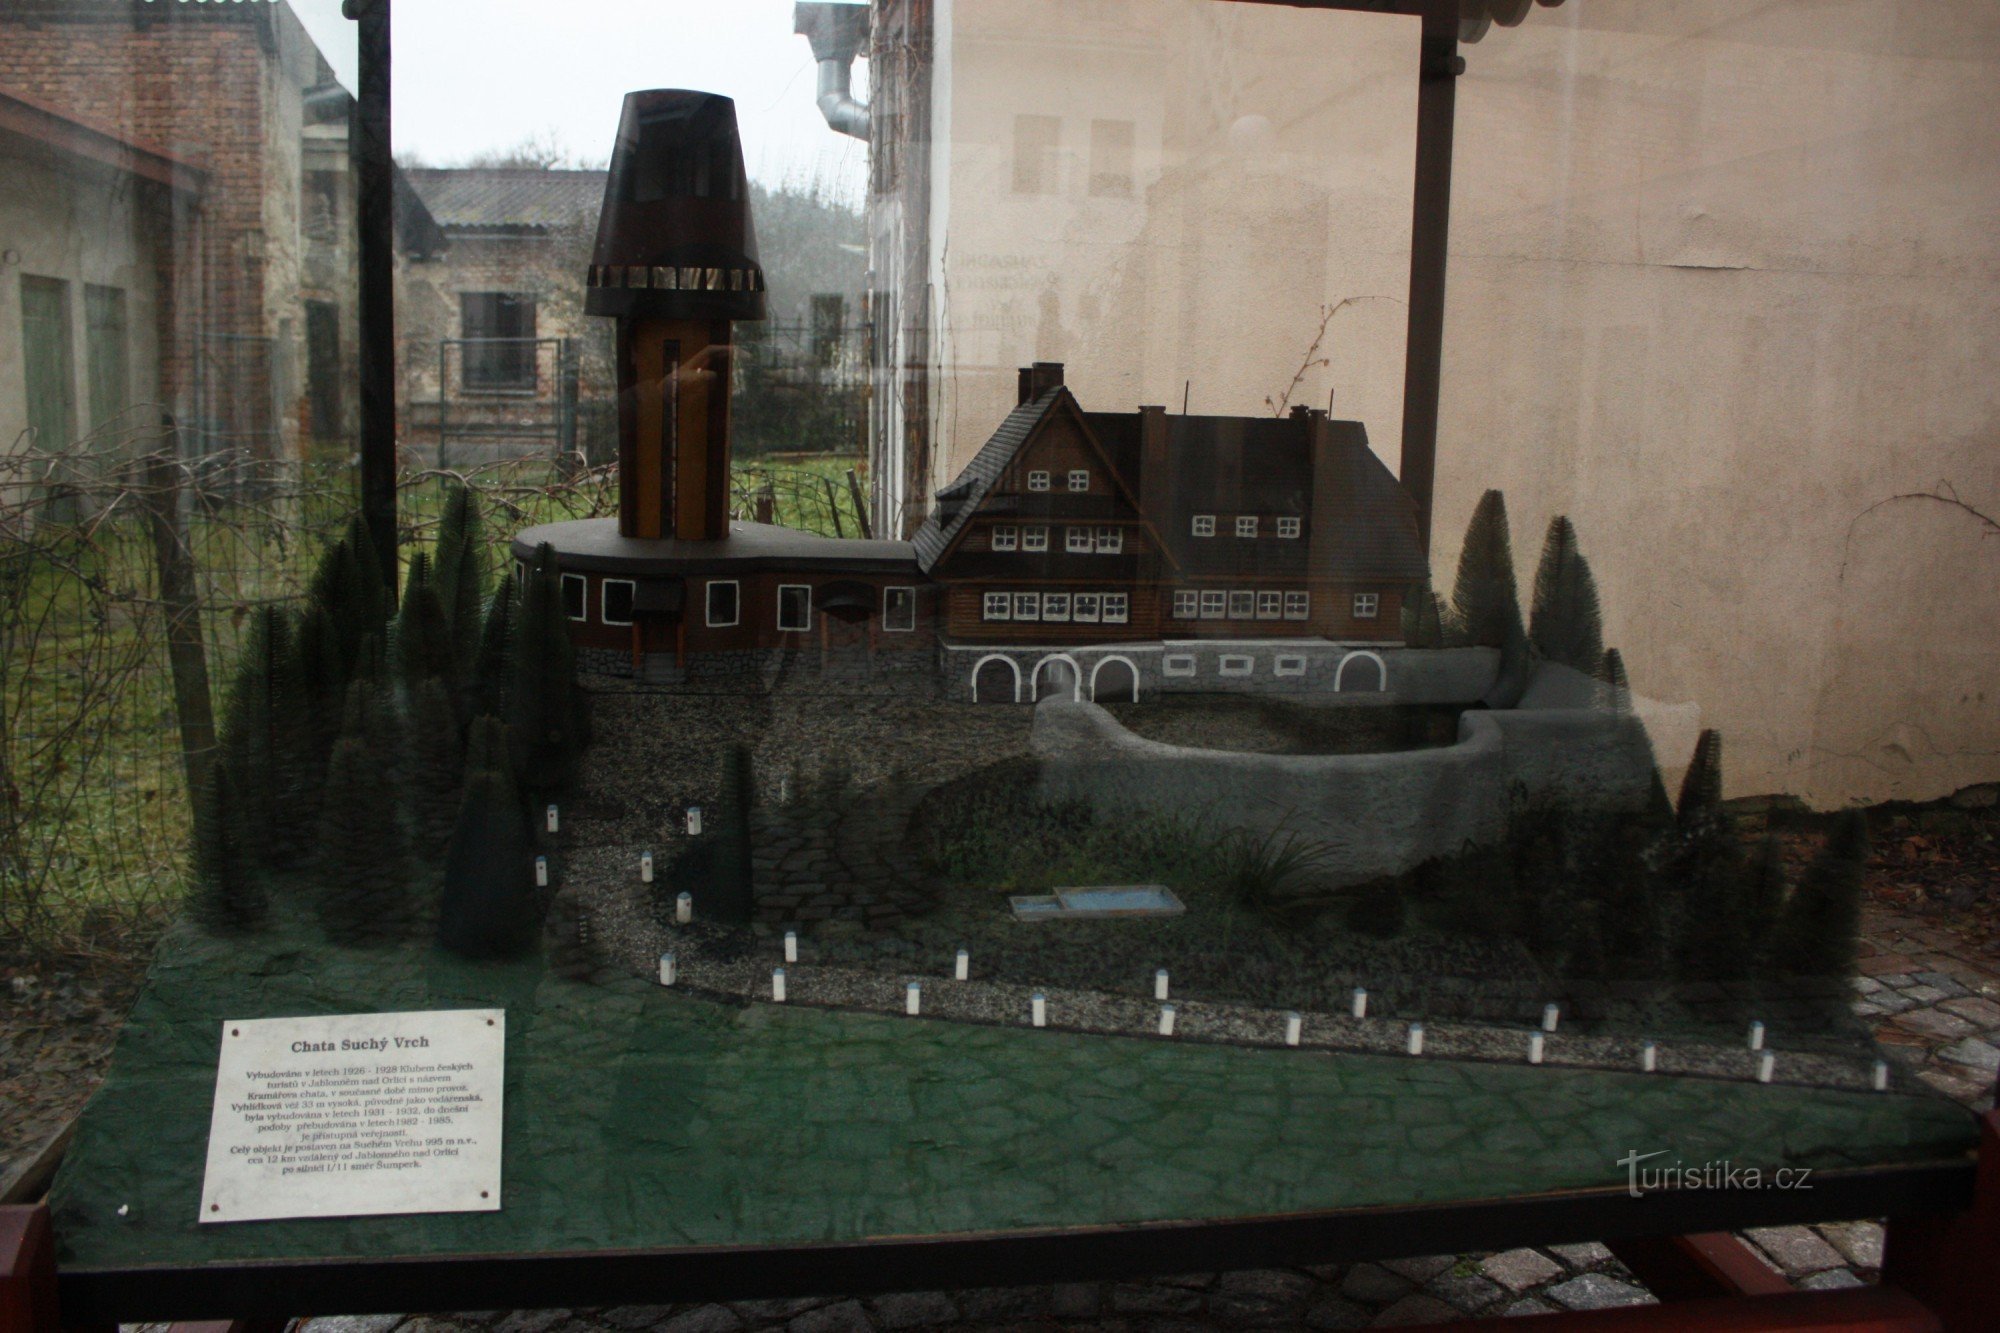 Модель котеджу та оглядової вежі на Суче Врх у Яблонному в Орлицьких горах